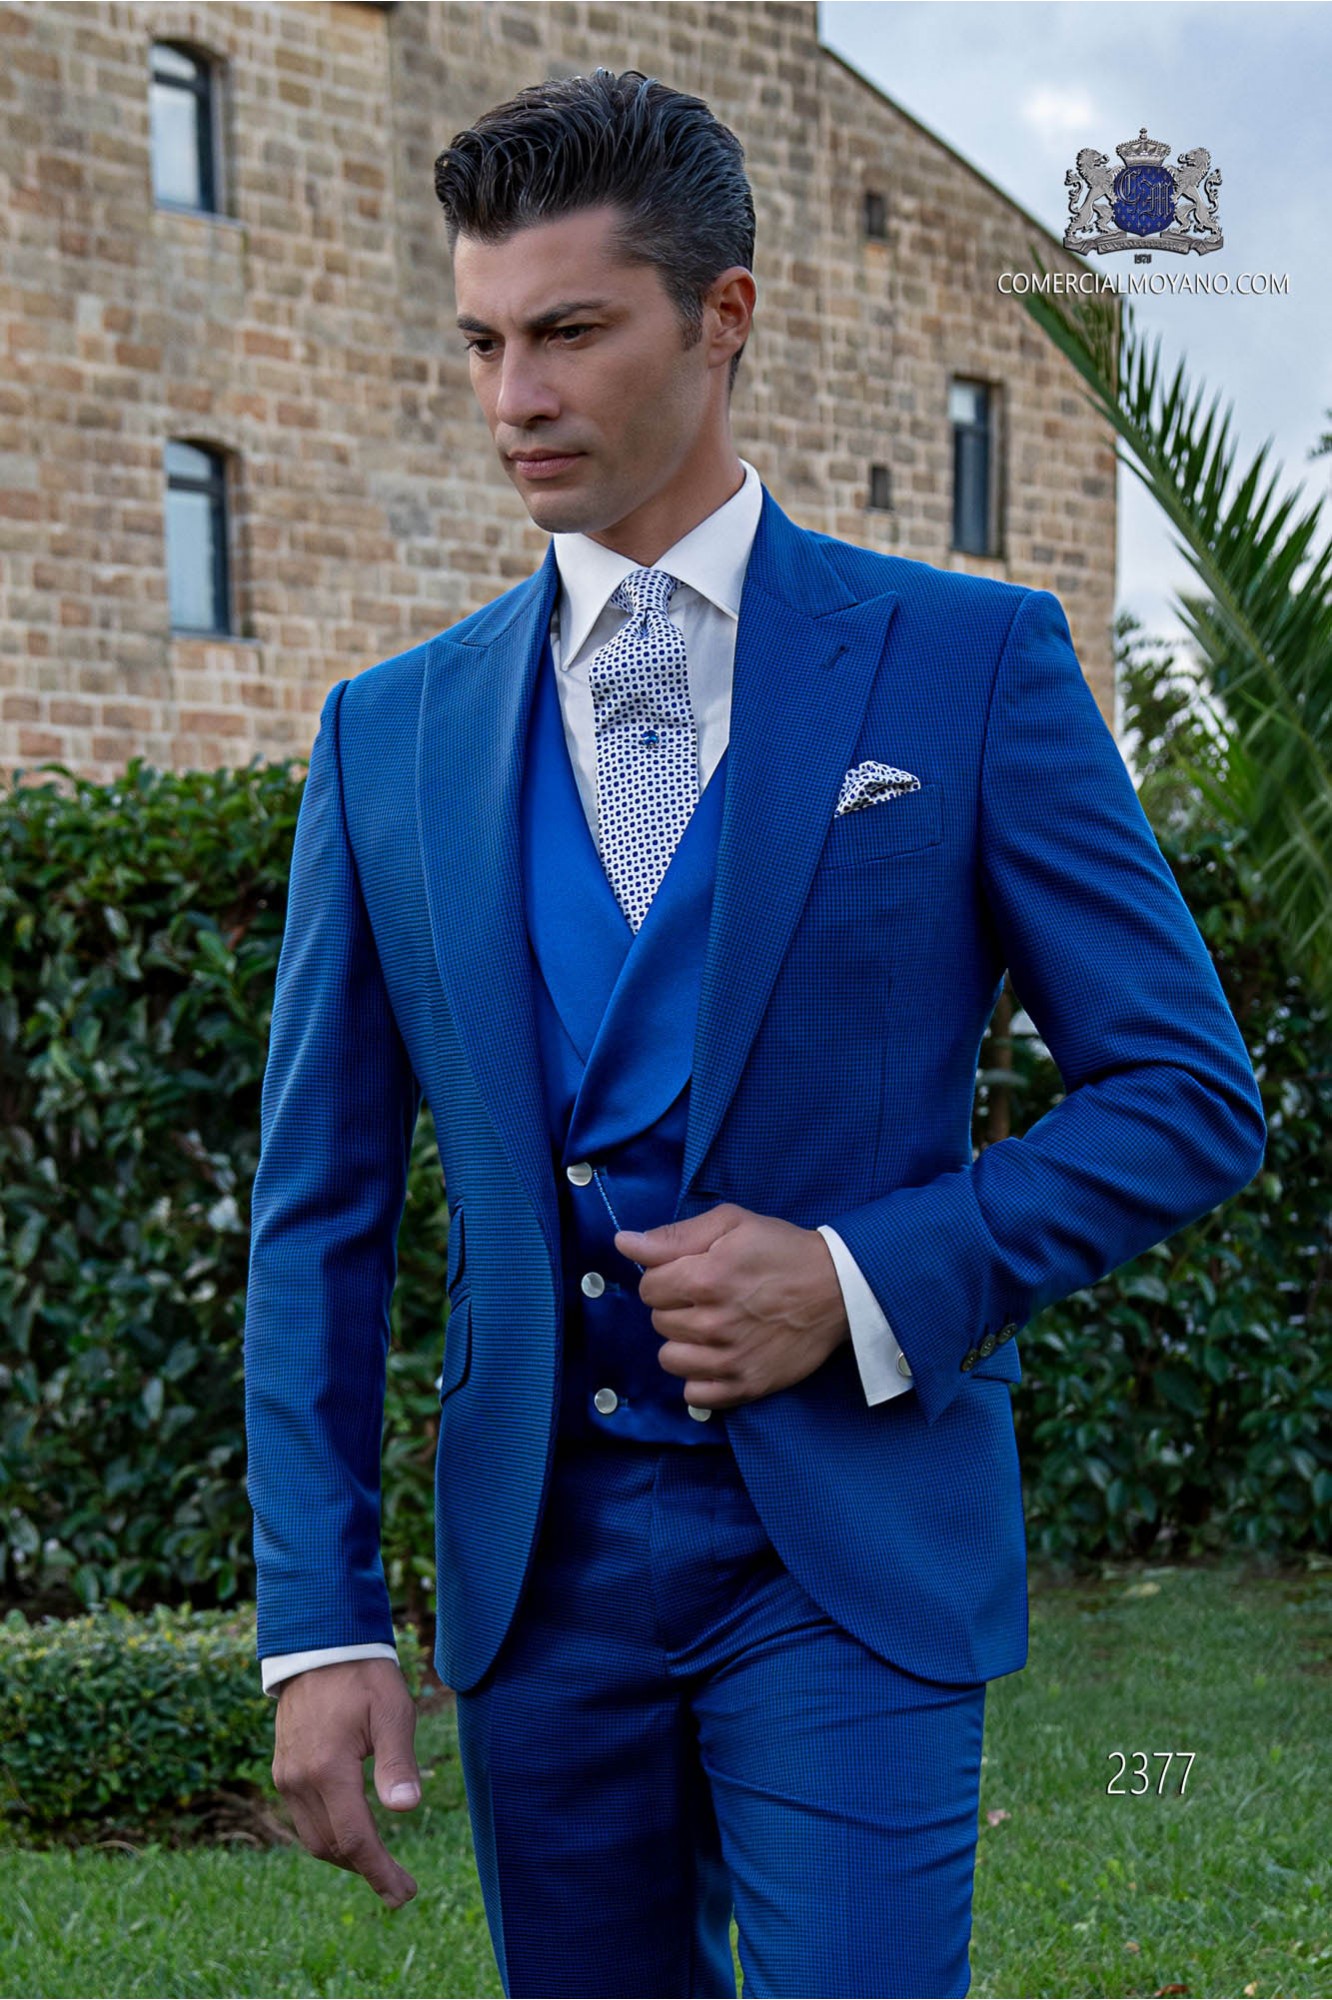 Traje de novio pata de gallo azul royal modelo: 2377 Mario Moyano colección Gentleman